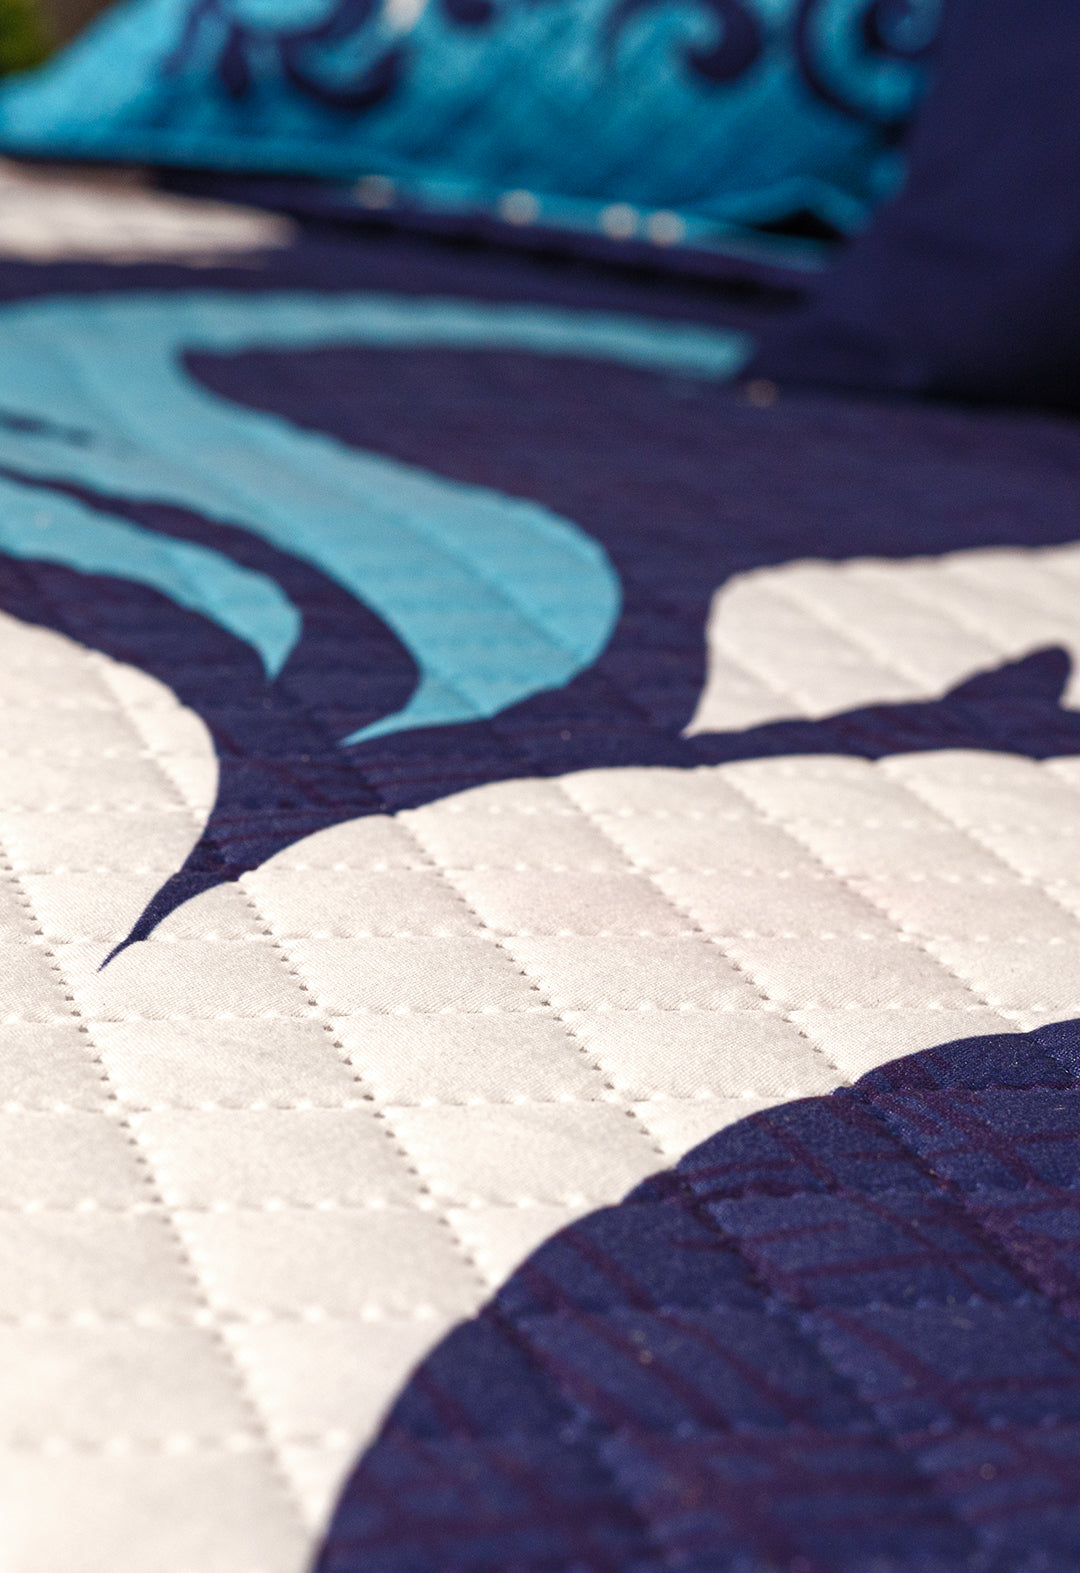 El Coordinado de Colcha Cobalto, Es un hermoso juego de color blanco y tonos azules, con un hermoso diseño capitonado sin hilos, incluye juego de sabanas y cojin.